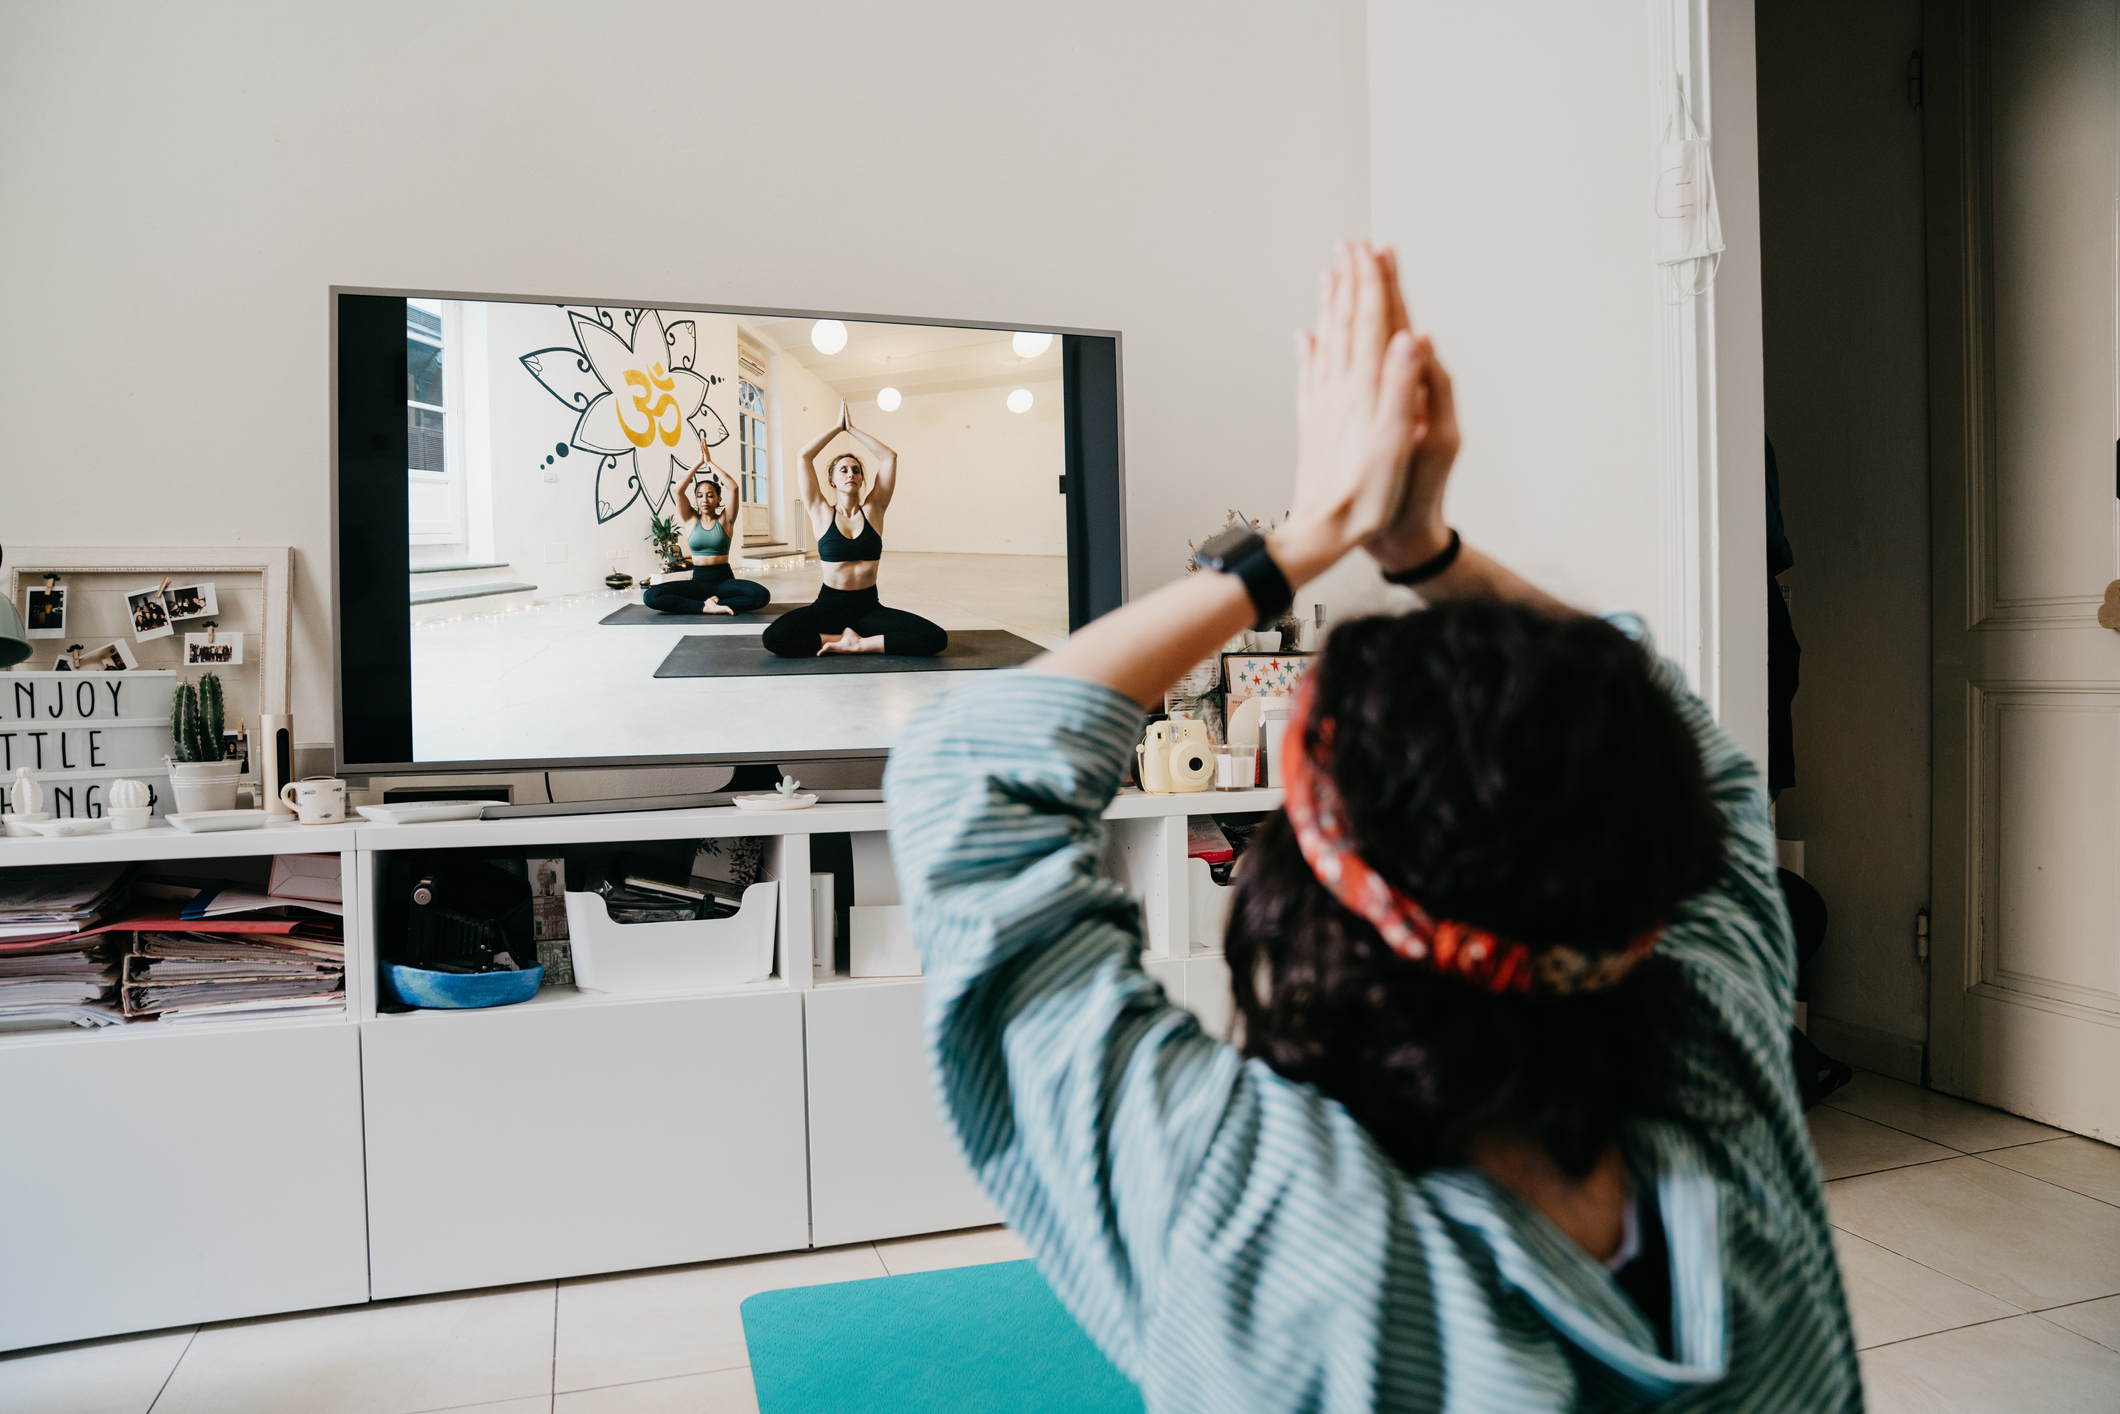 Mujer practicando yoga en el hogar con una lección en video en la televisión. Está en el hogar durante la cuarentena del coronavirus Covid-19.